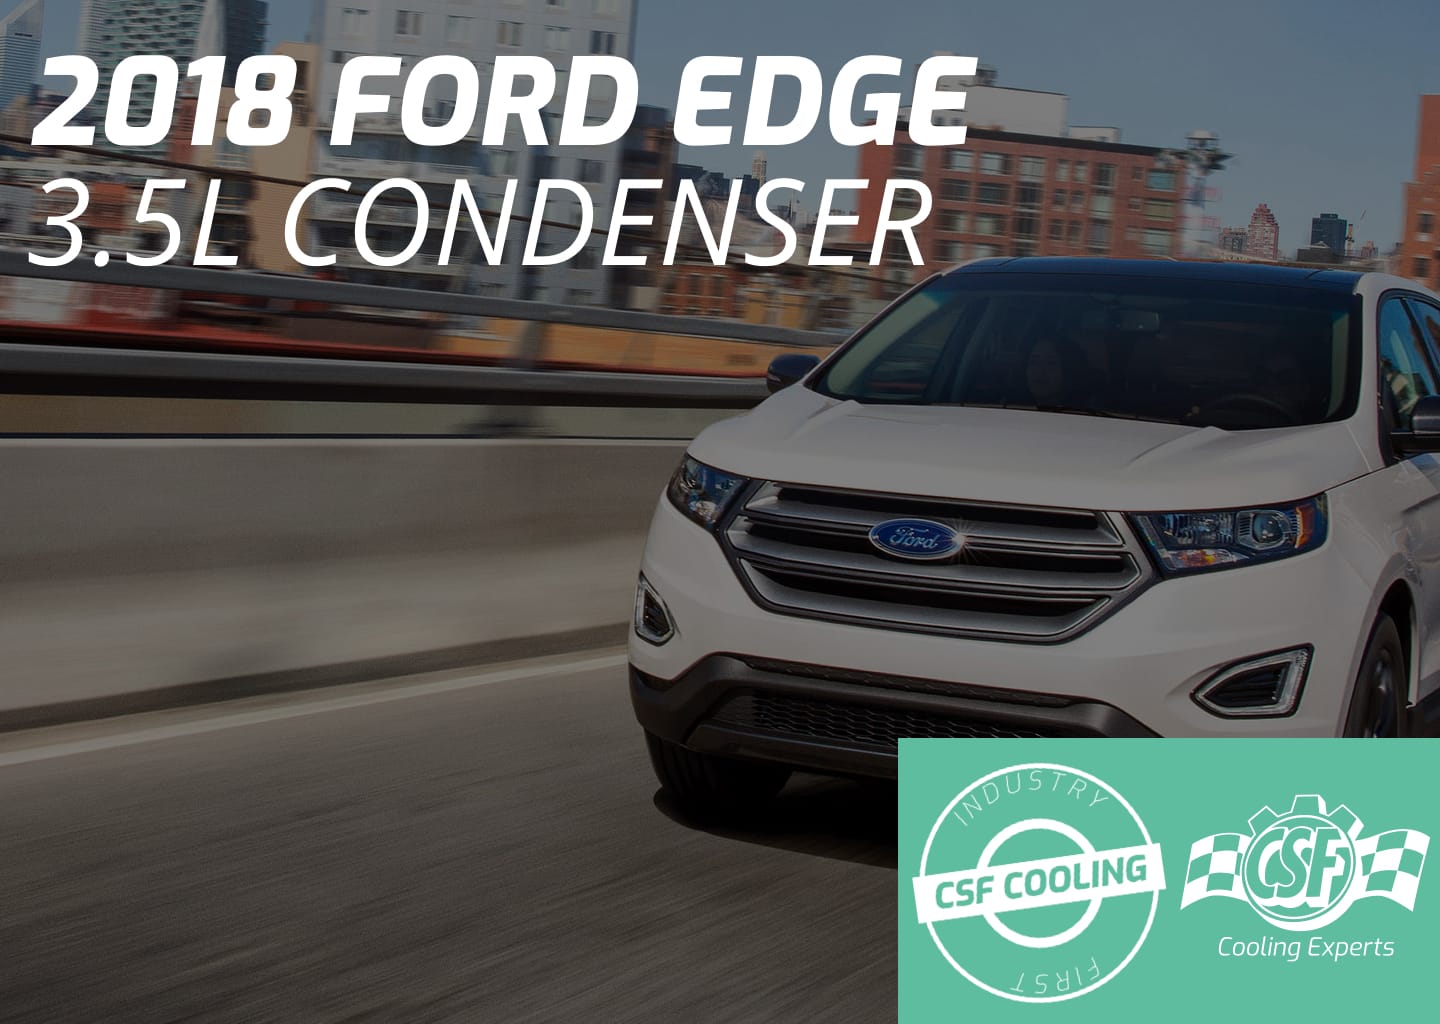 2018 Ford Edge 3.5L Condenser